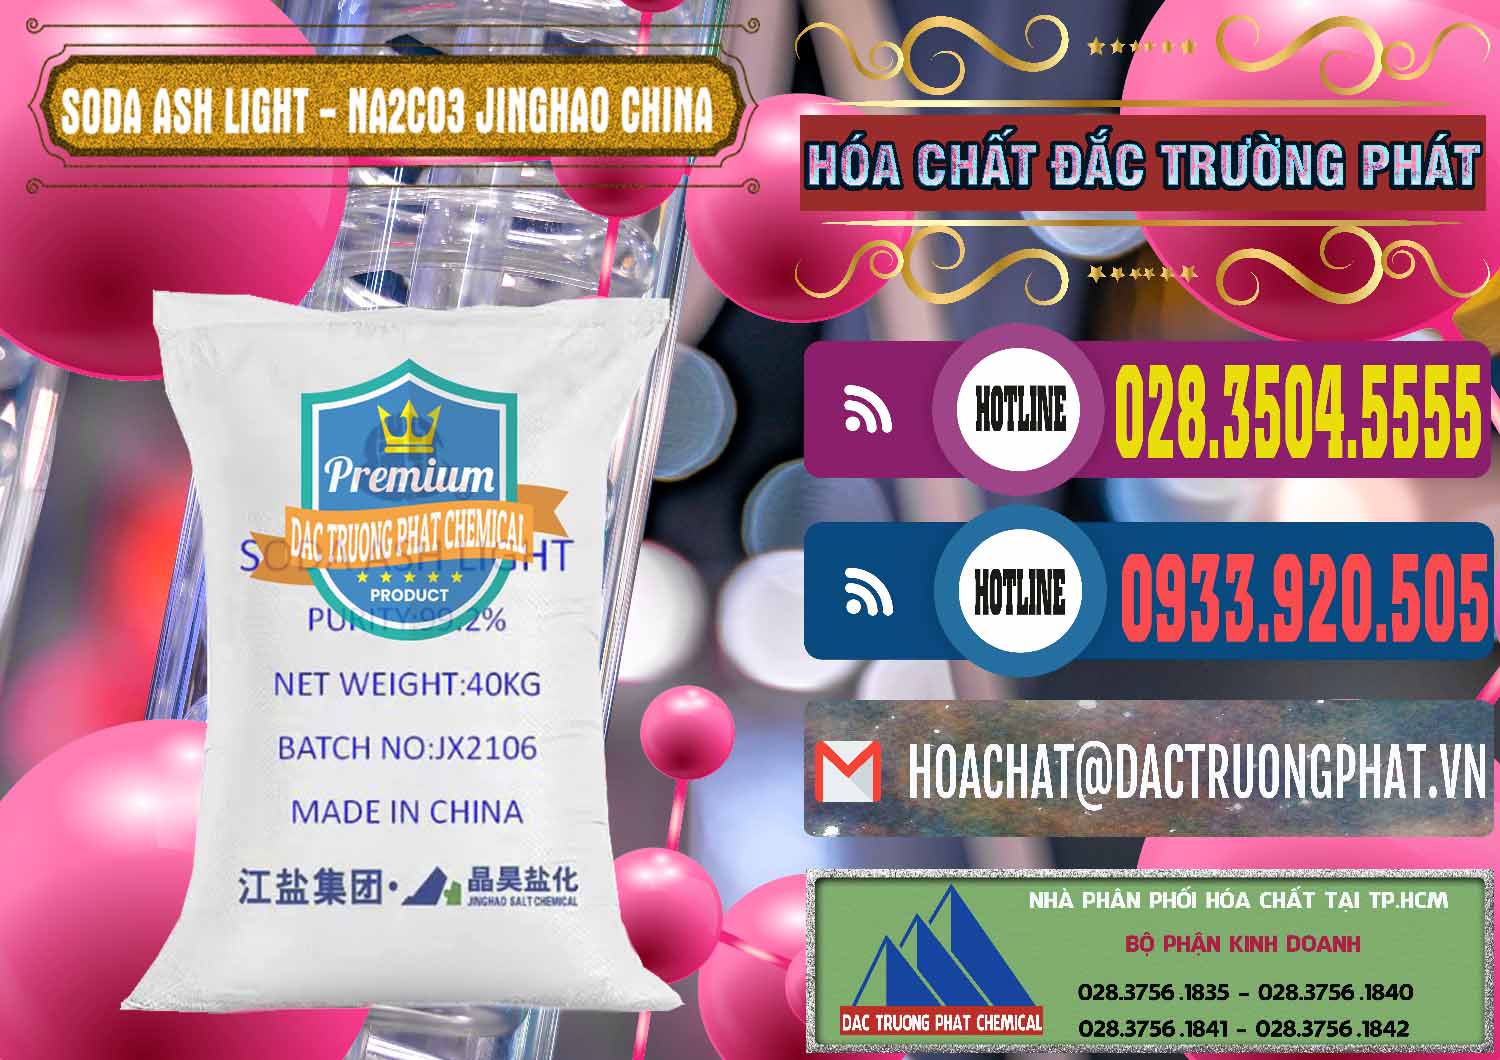 Nơi chuyên kinh doanh ( bán ) Soda Ash Light - NA2CO3 Jinghao Trung Quốc China - 0339 - Nhập khẩu & cung cấp hóa chất tại TP.HCM - muabanhoachat.com.vn